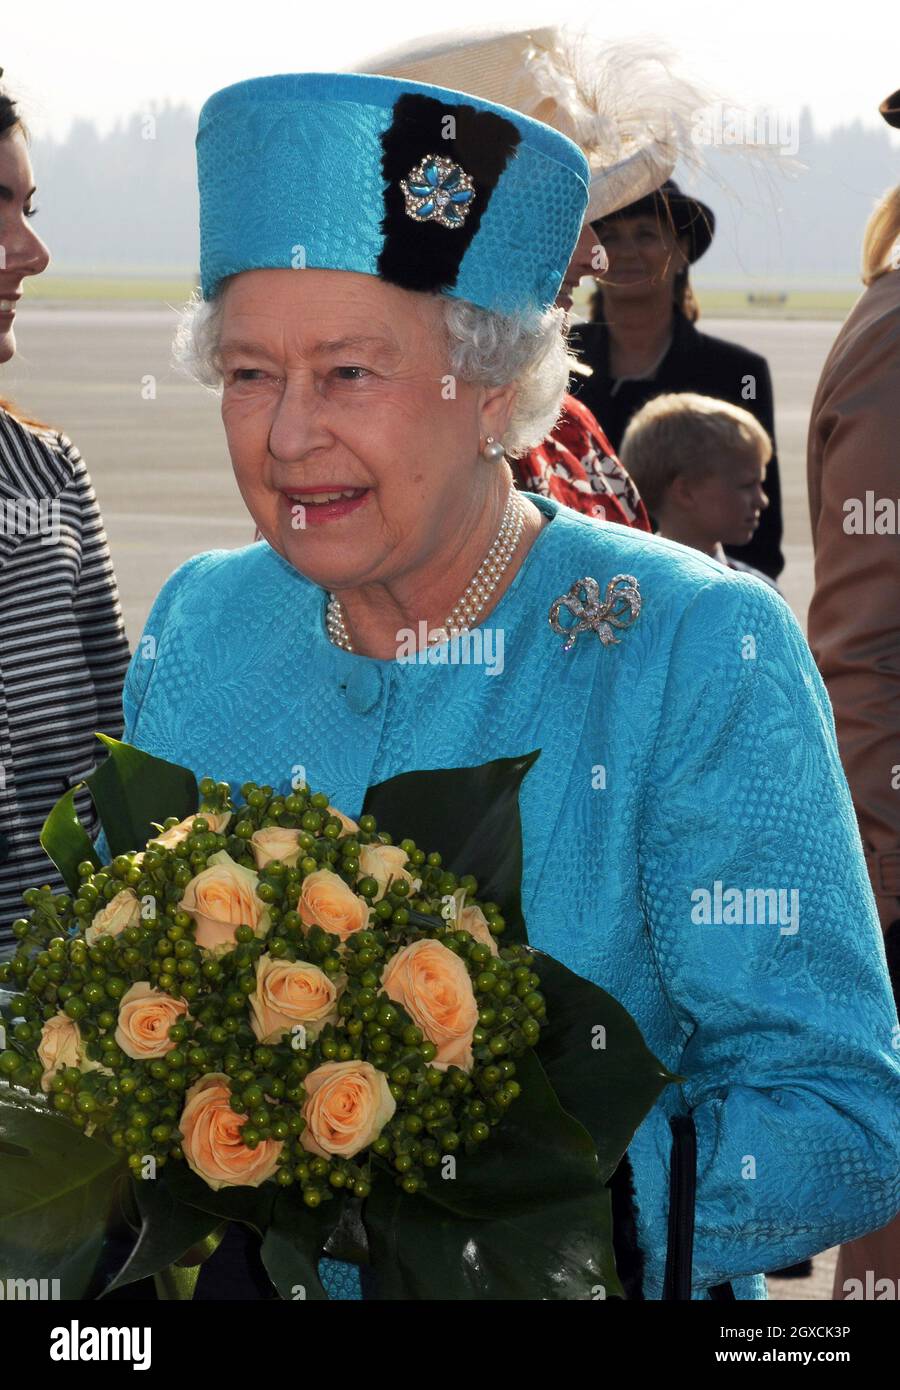 La reine Elizabeth ll arrive à l'aéroport de Joze Pucnik au début d'une visite d'État en Slovénie. Banque D'Images